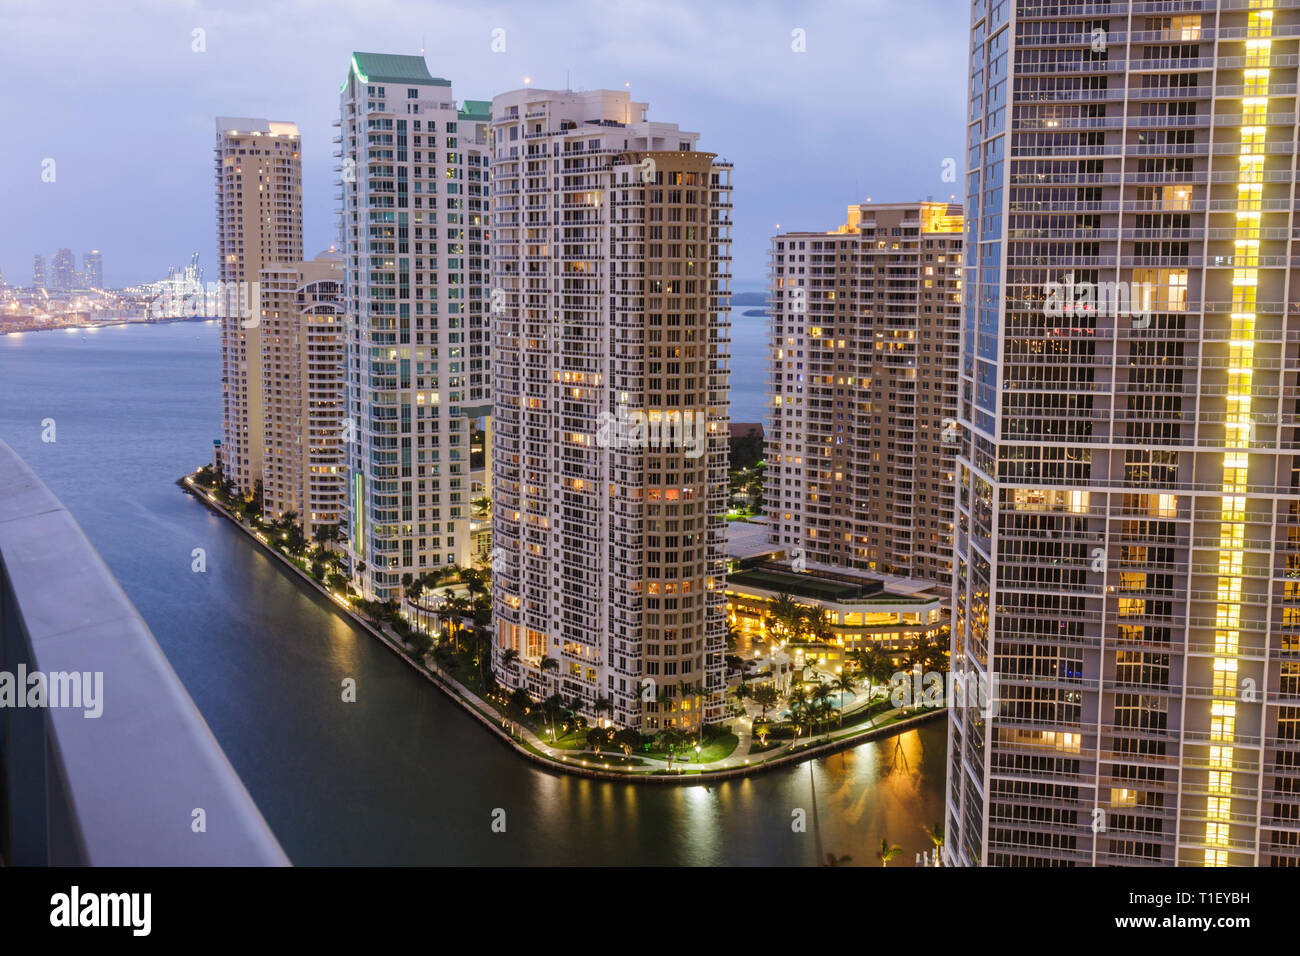 Miami Florida, Brickell Key, Blick von Epic, Hotel, Gebäude, Skyline der Stadt, Wohnanlagen, Wolkenkratzer, Hochhäuser Wolkenkratzer Gebäude CI Stockfoto